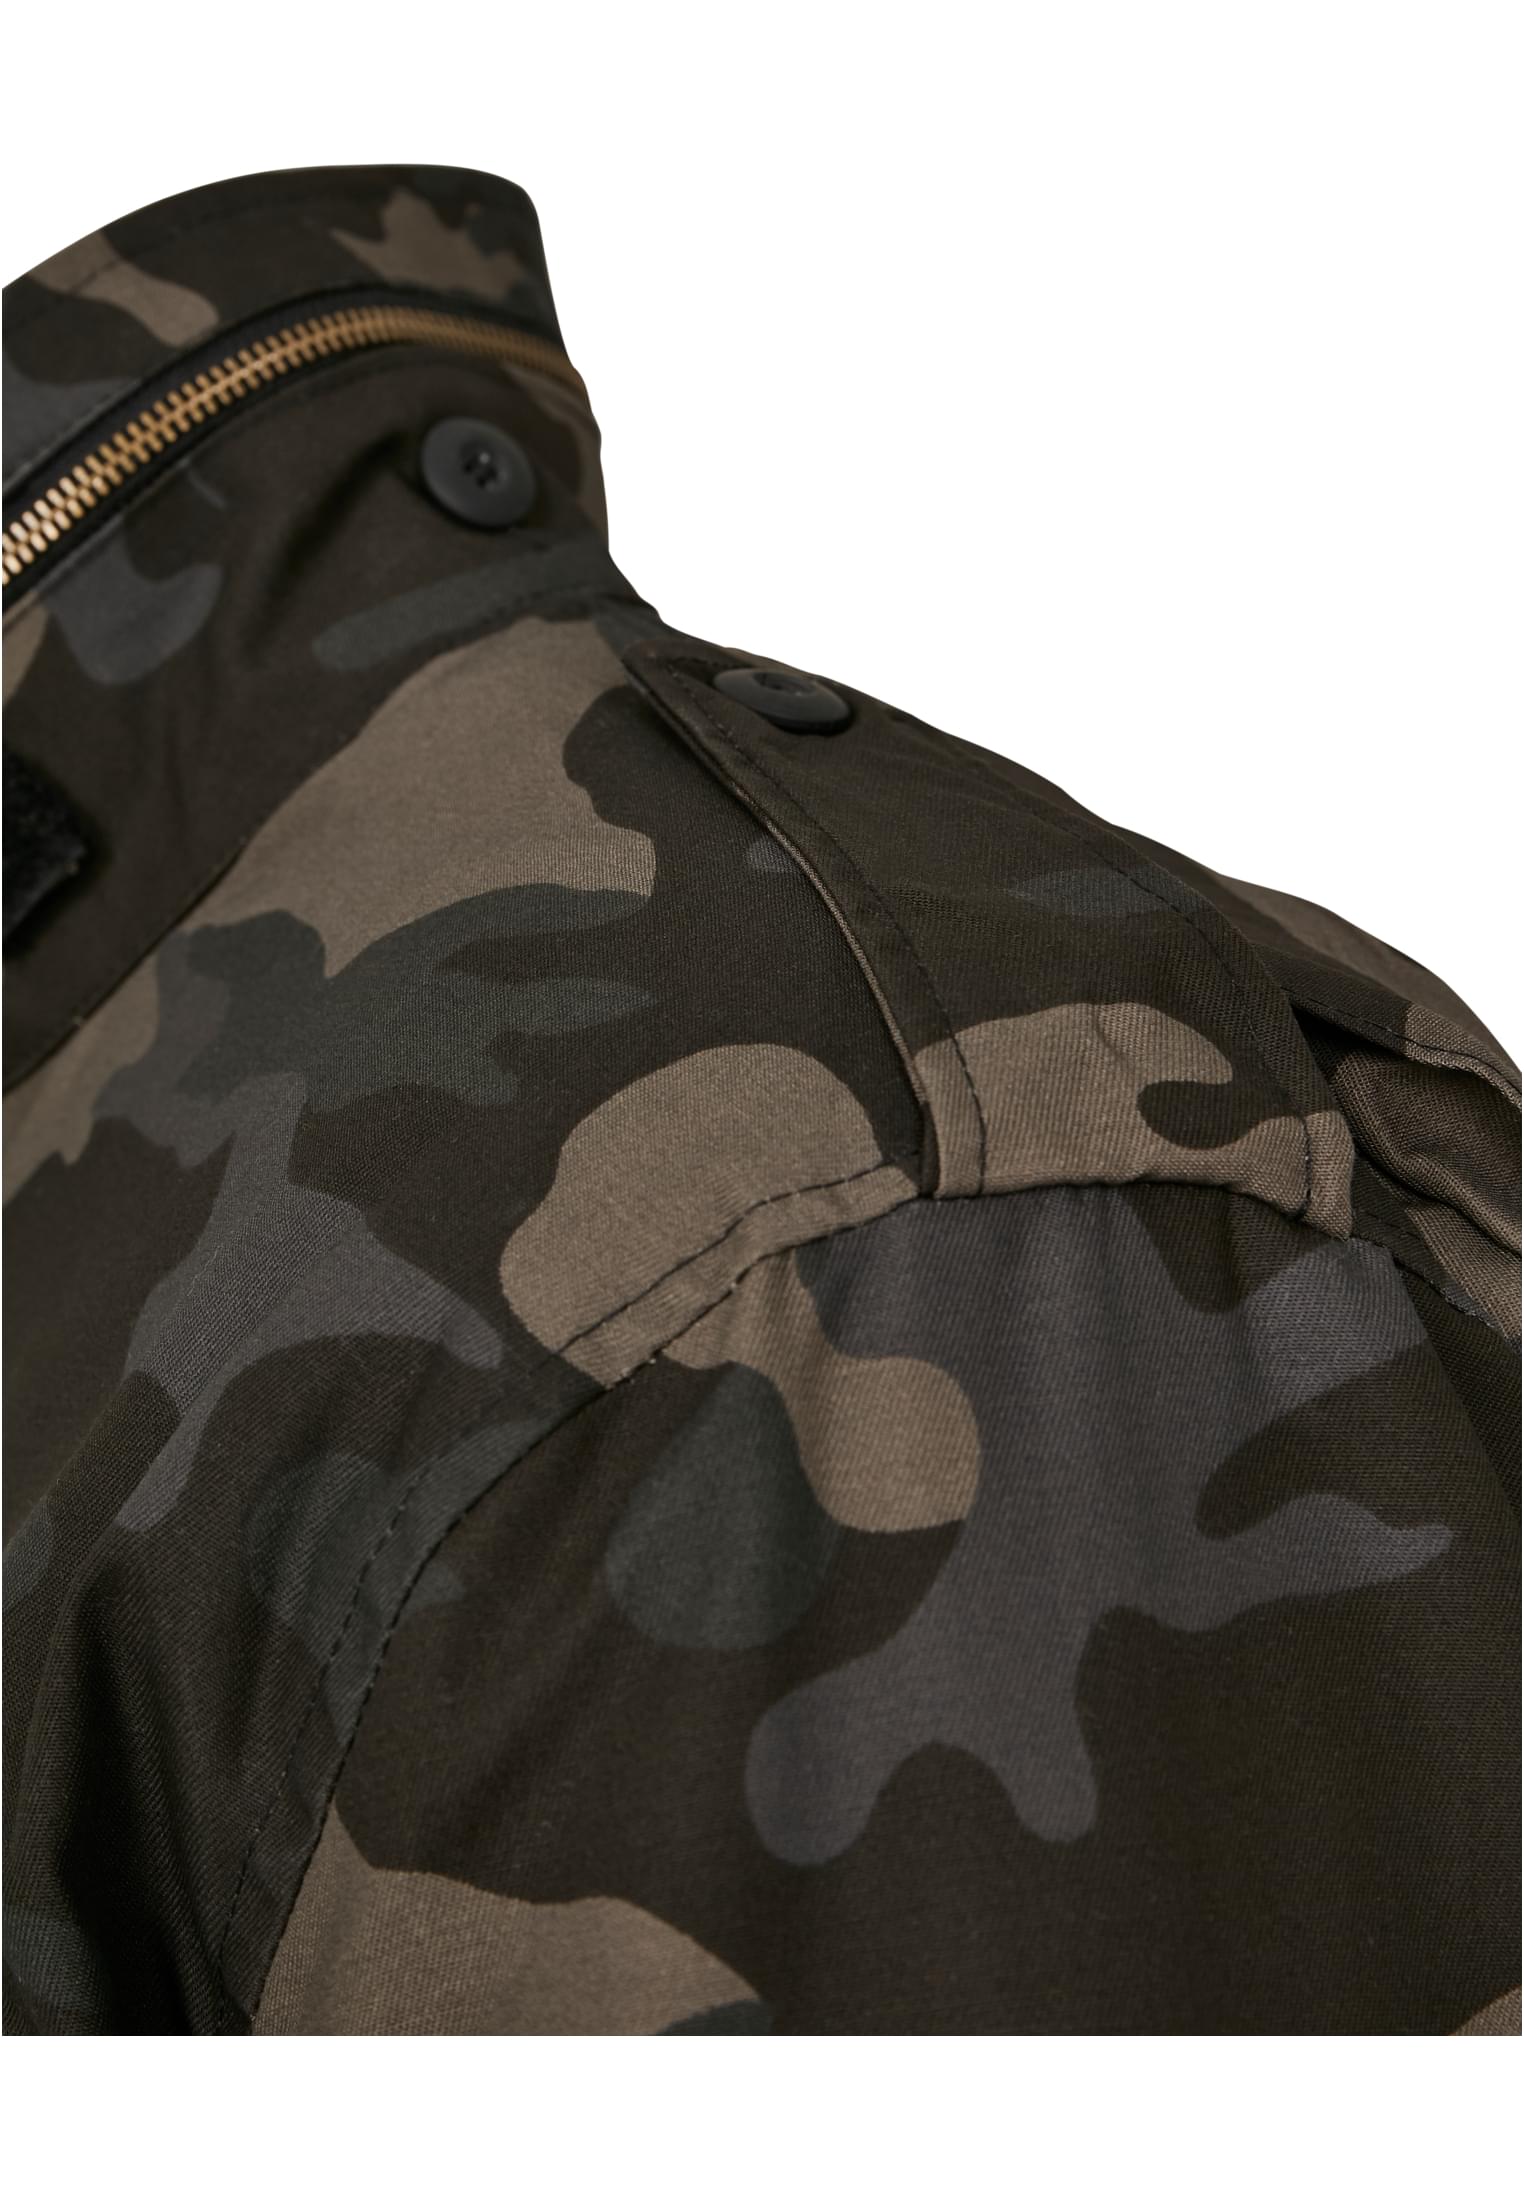 Jacken M-65 Field Jacket in Farbe darkcamo